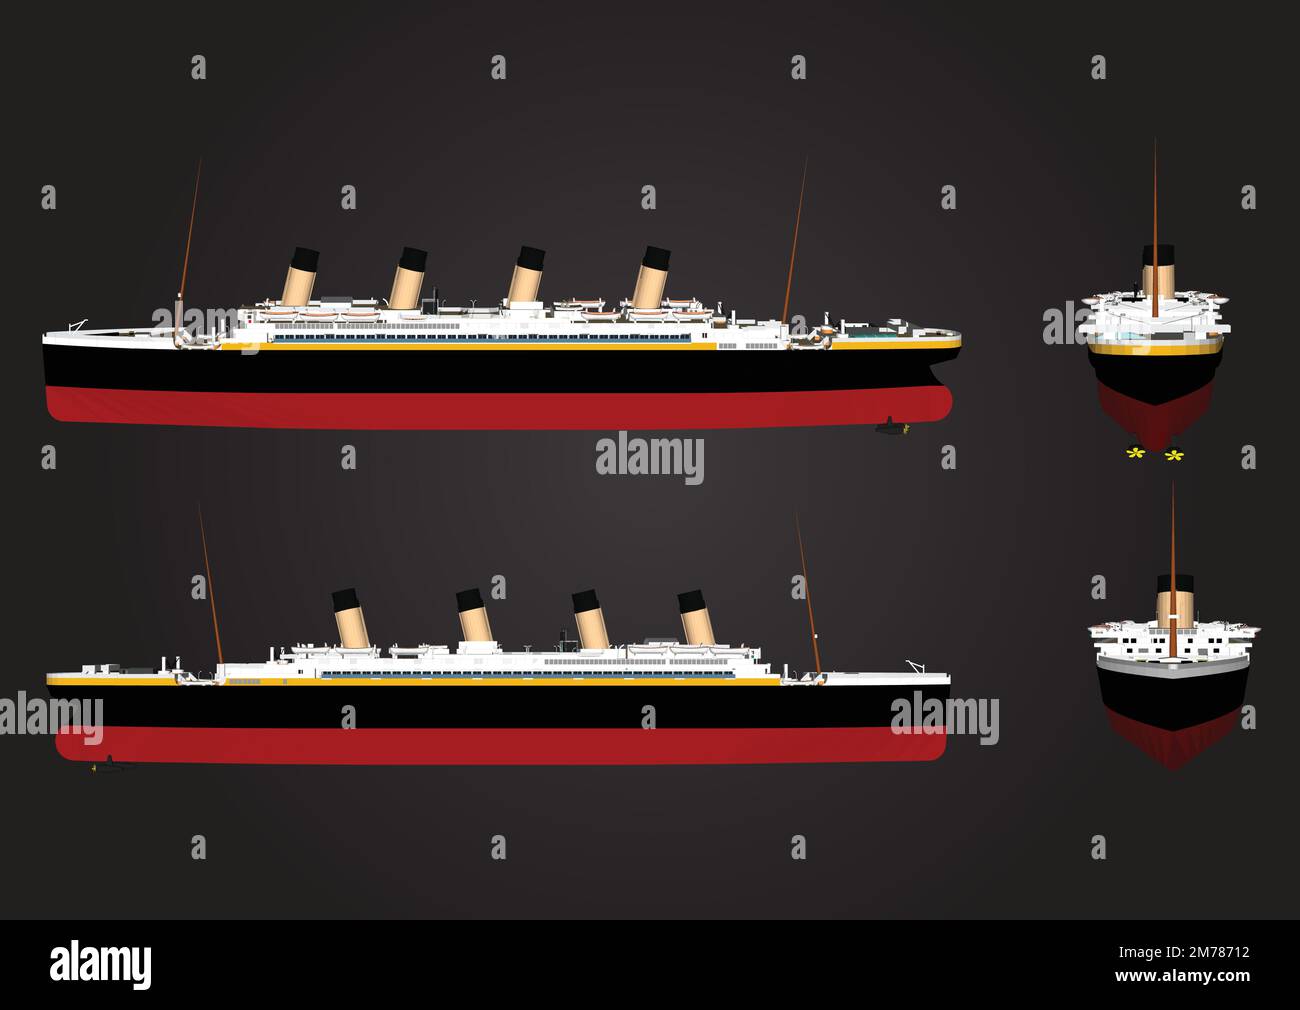 Naufrage Titanic légendaire colossal bateau monumental grand symbole de navire icône aplatir isolé illustration vecteur maître Illustration de Vecteur